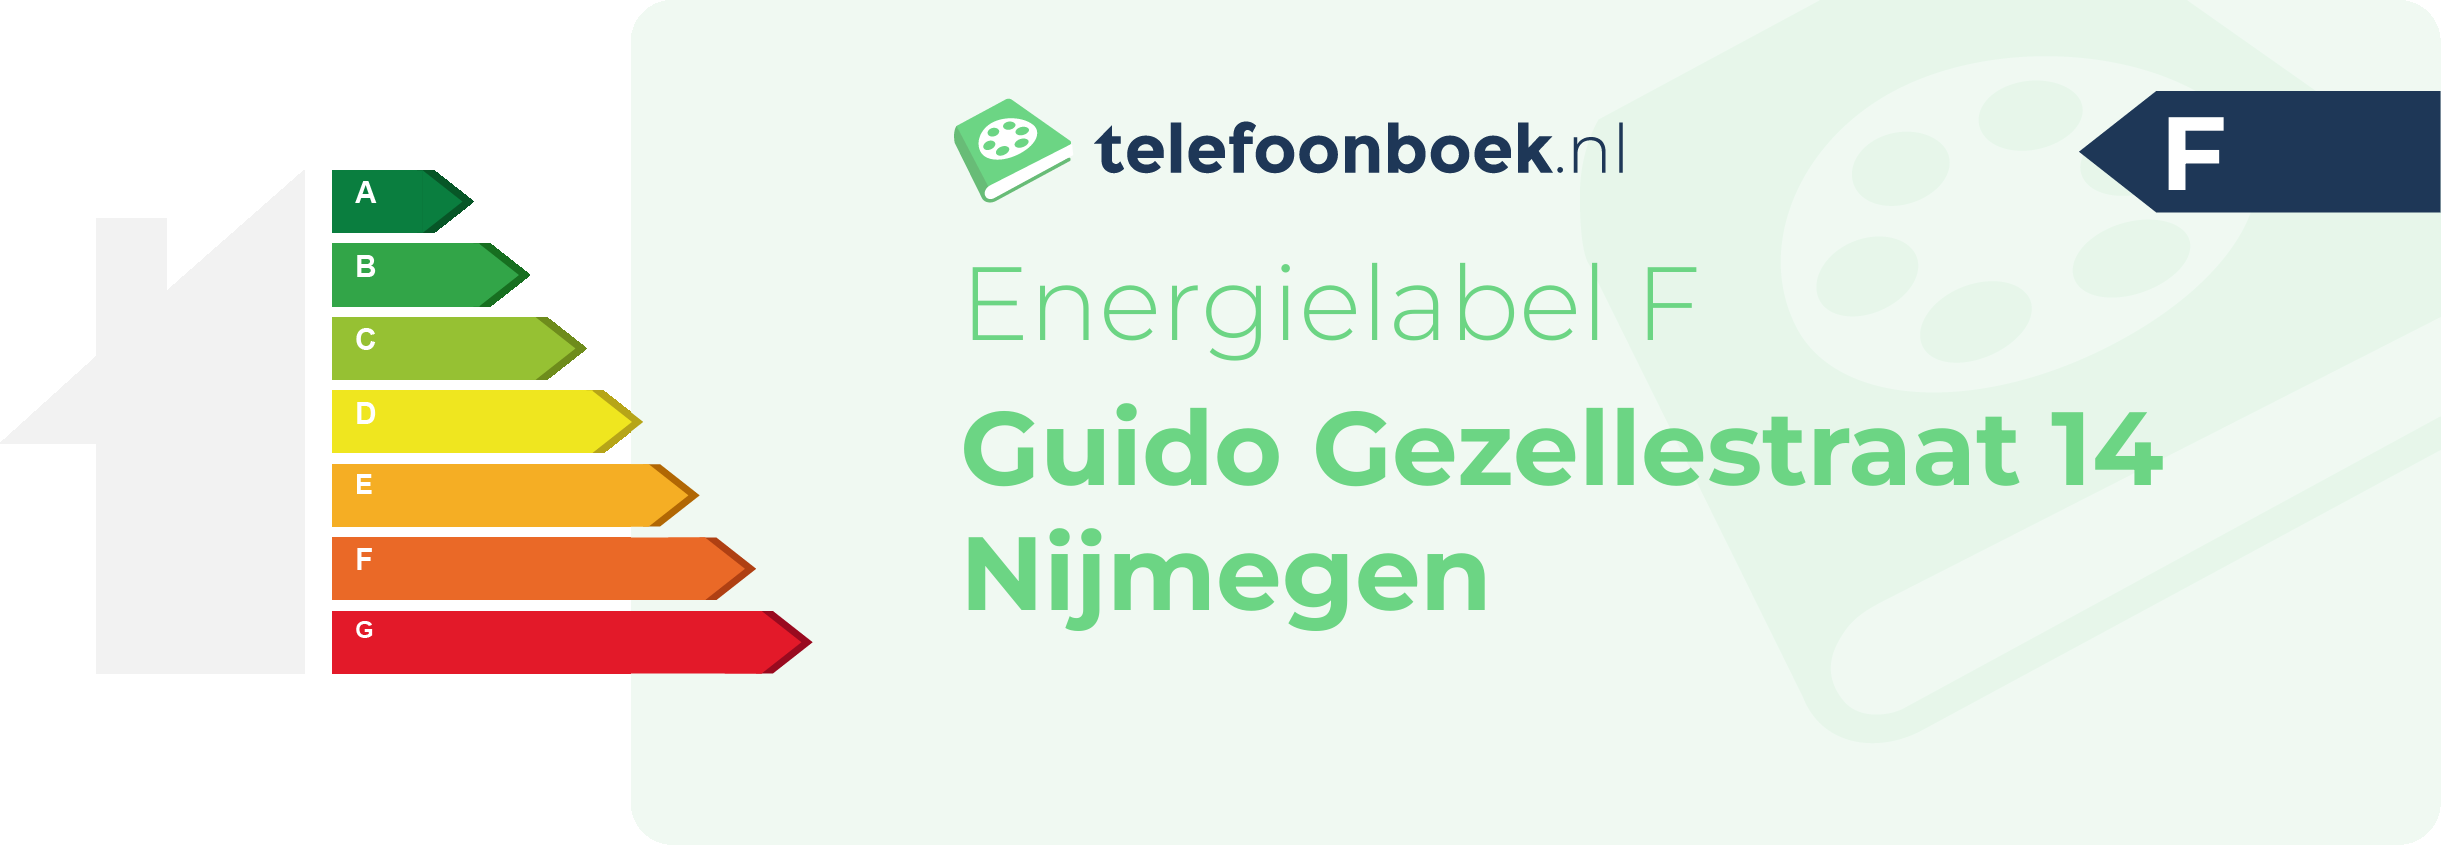 Energielabel Guido Gezellestraat 14 Nijmegen